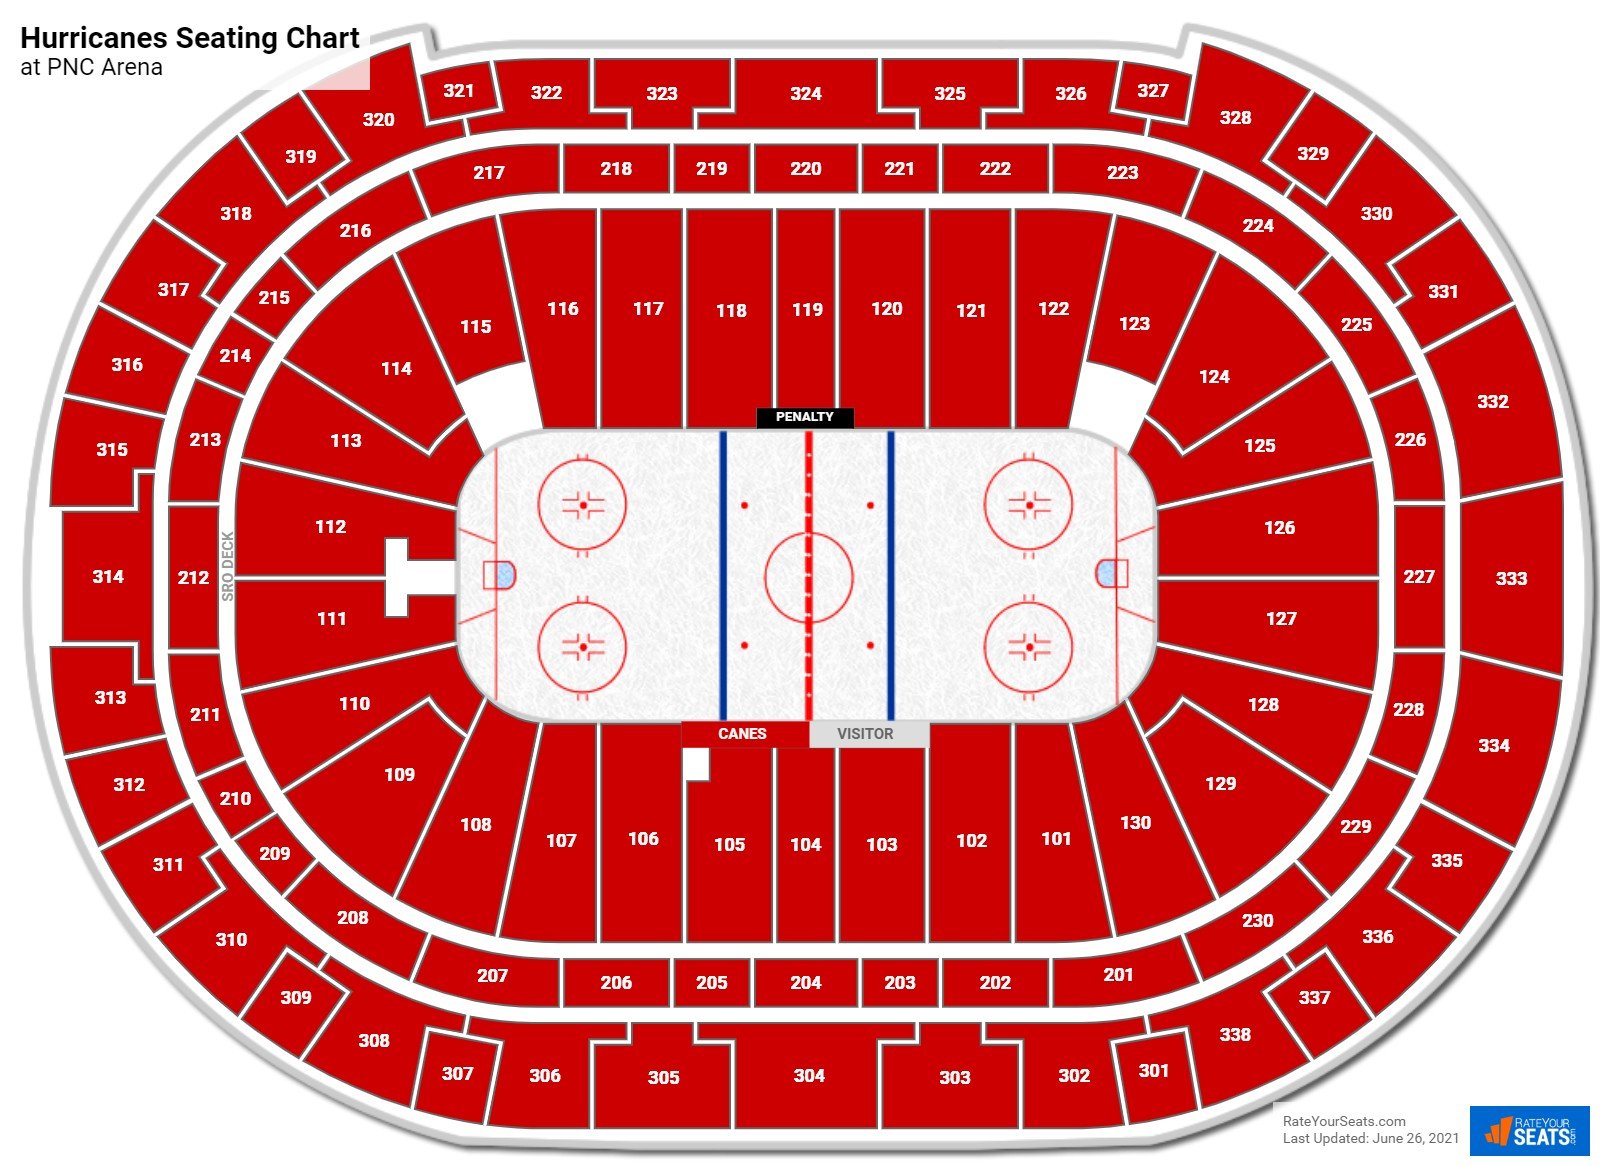 Carolina Hurricanes Seating Chart at PNC Arena